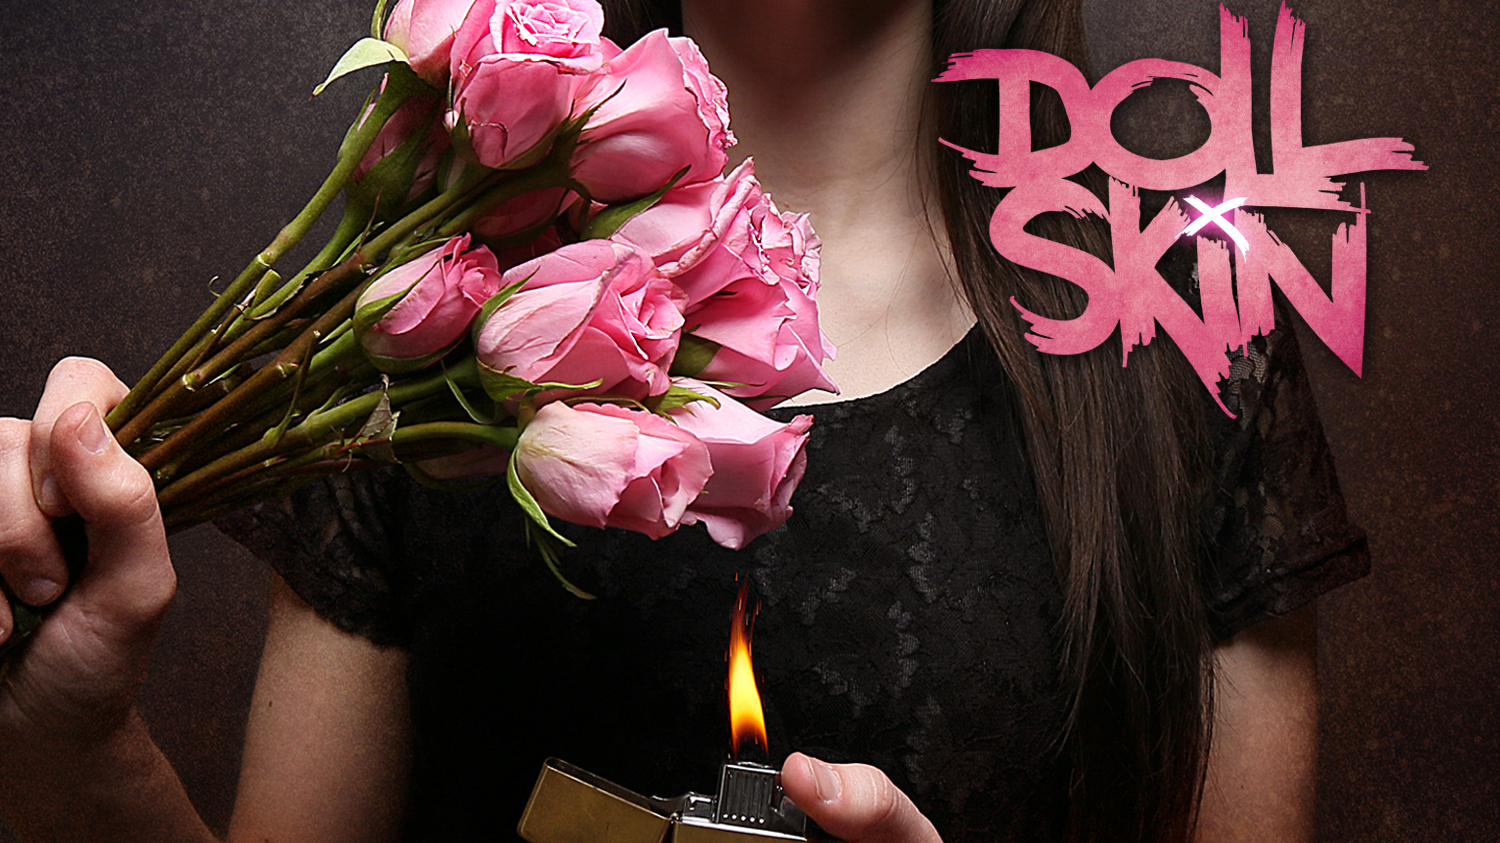 skranke Ordsprog beslag Doll Skin - Manic Pixie Dream Girl album review | Louder